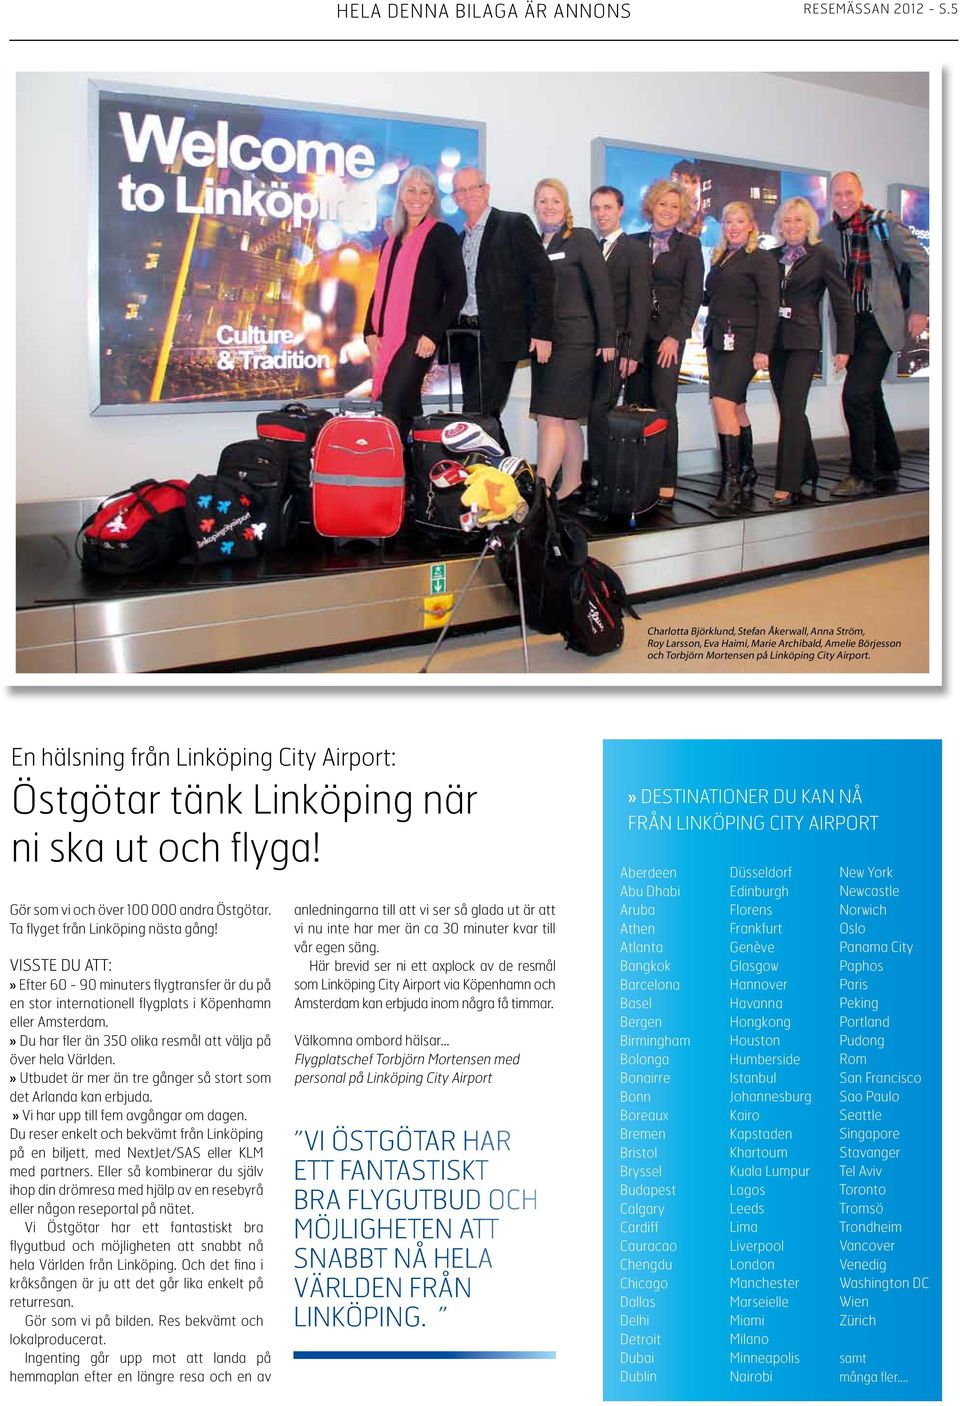 En hälsning från Linköping City Airport: Östgötar tänk Linköping när ni ska ut och flyga! Gör som vi och över 100 000 andra Östgötar. ta fl yget från Linköping nästa gång!